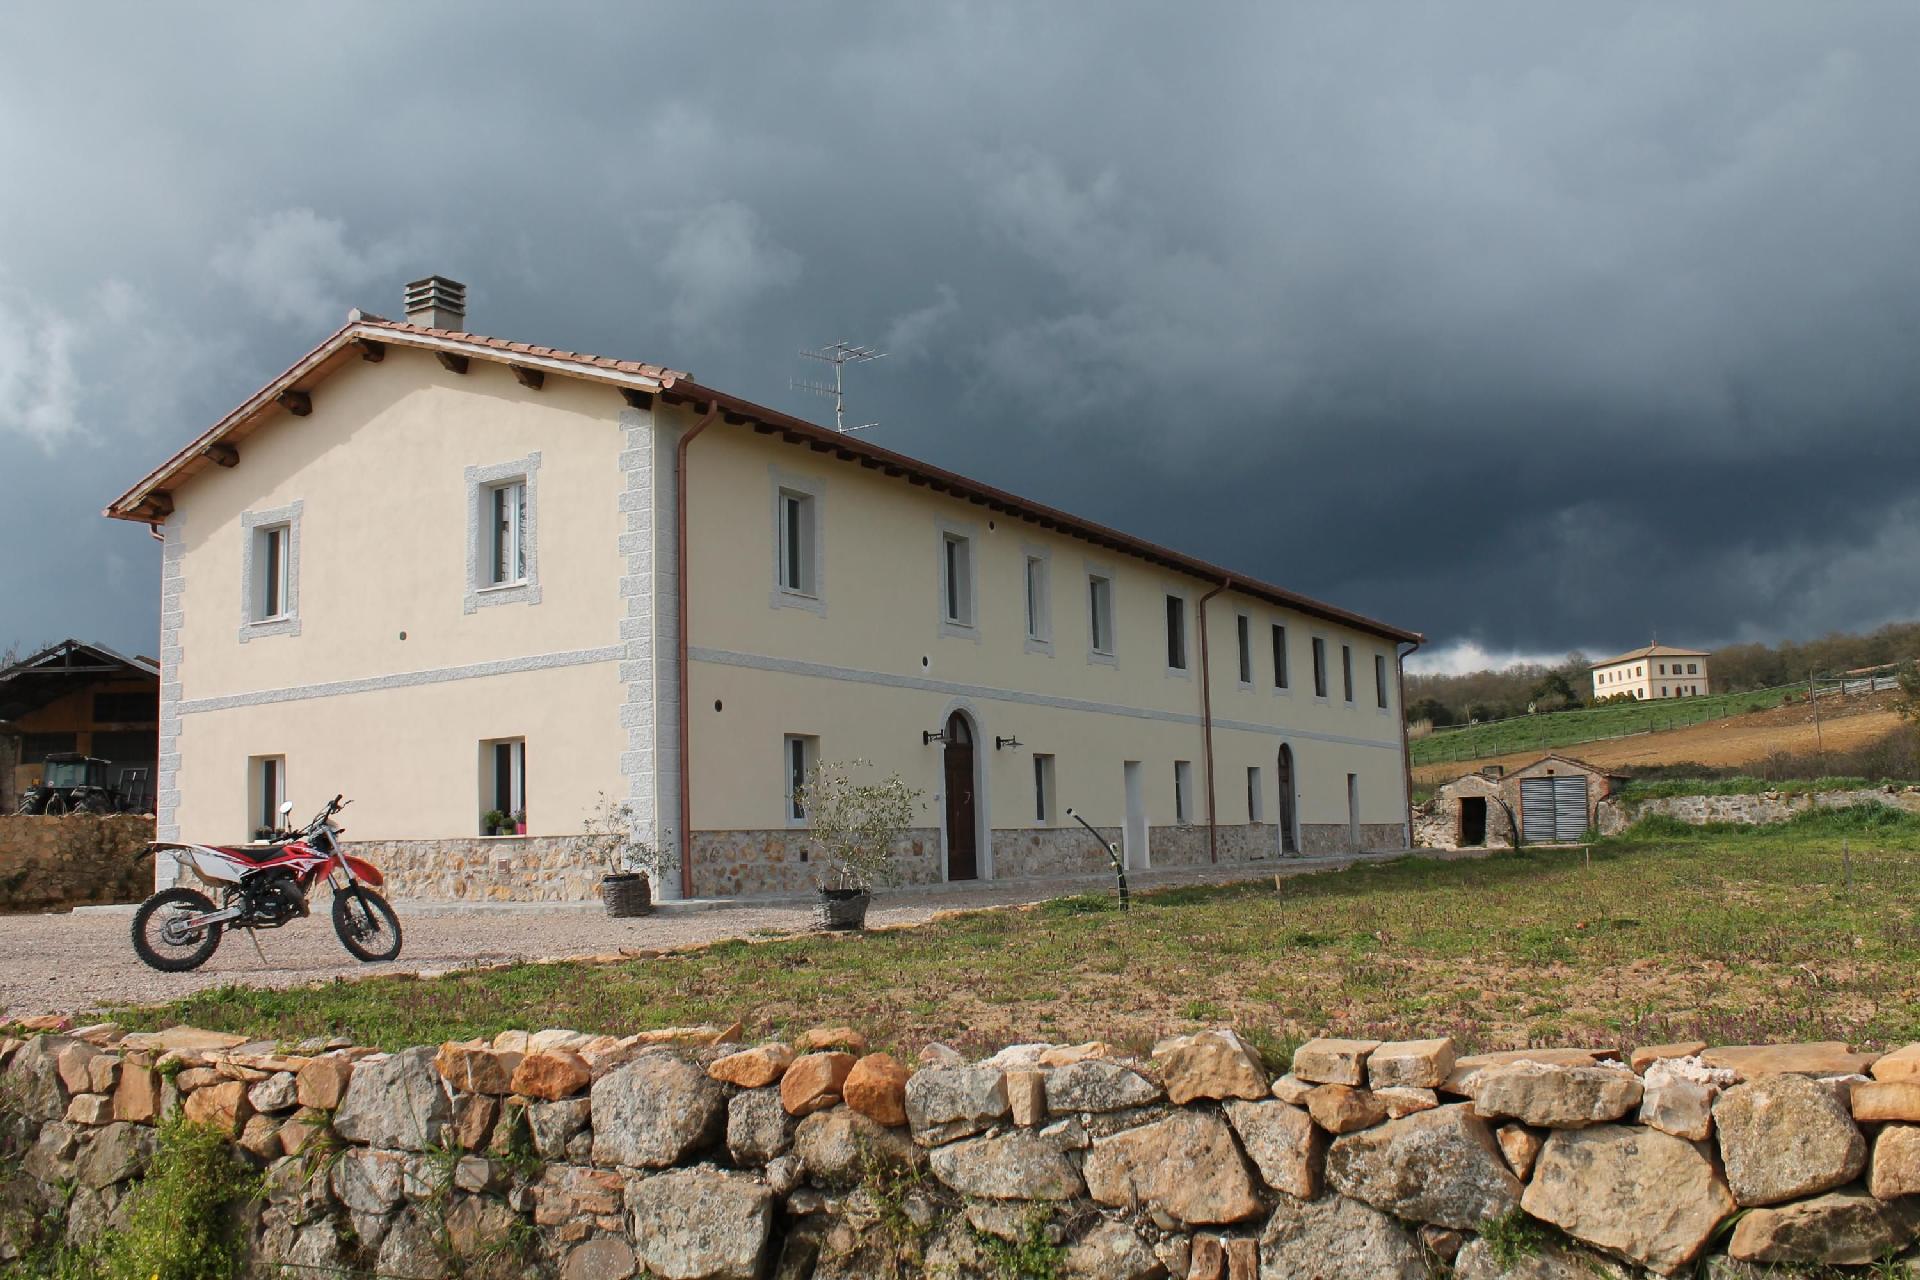 Ferienhaus für 9 Personen in Paganico, Toskan Ferienhaus in Europa